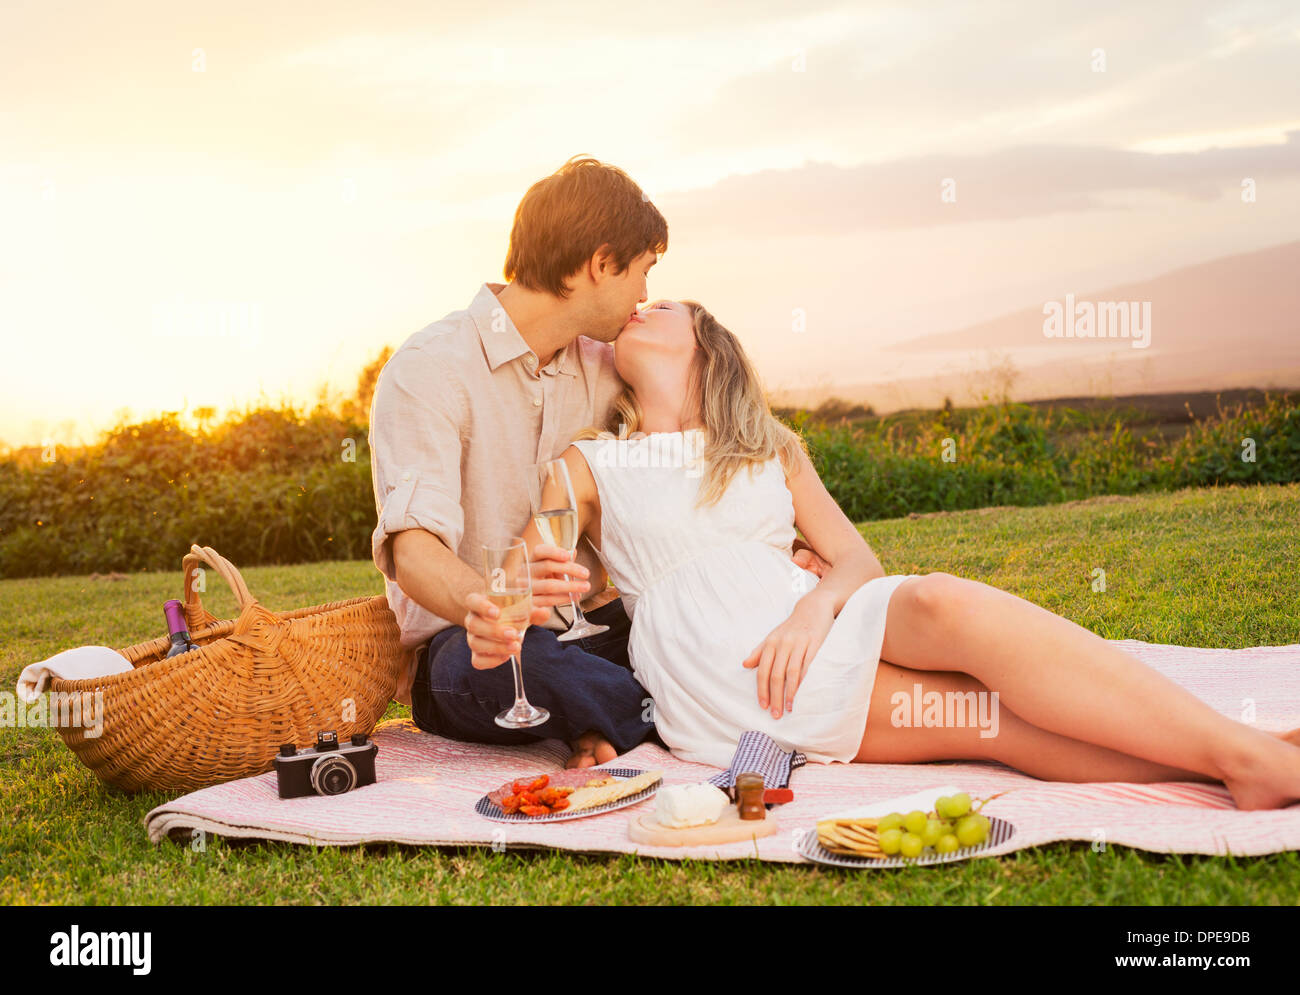 Beau couple Enjoying romantique coucher de soleil pique-nique dans la campagne Banque D'Images